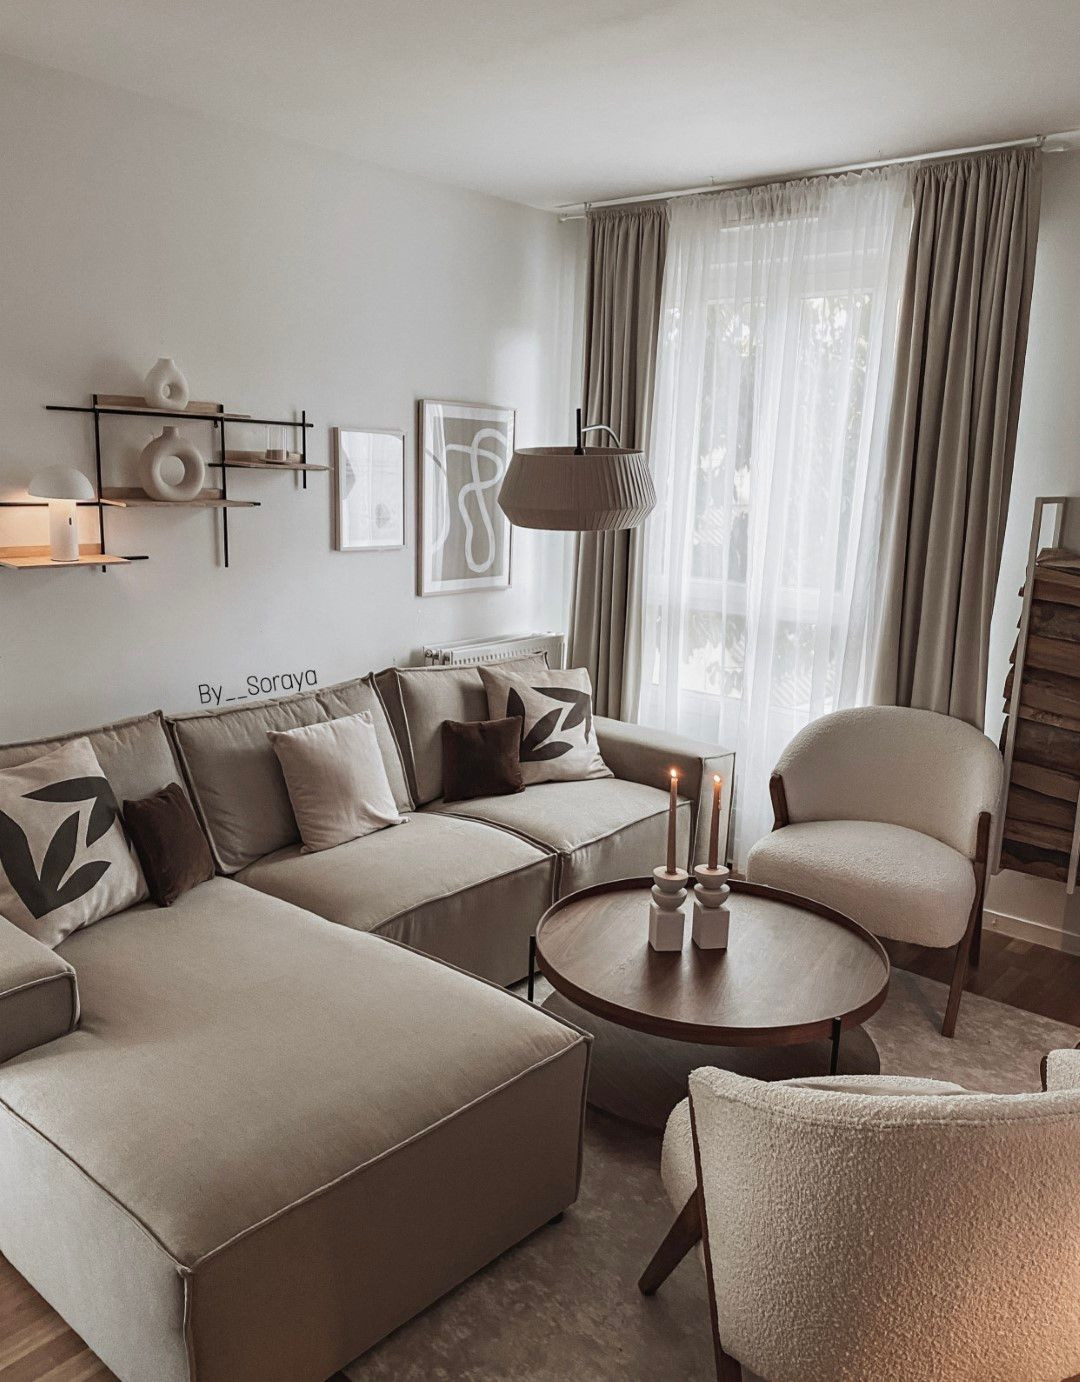 Welche Accessoires Sollte Man Zu Einem Braunen Sofa Wählen? | Slf24 inside Wohnzimmer Braune Couch